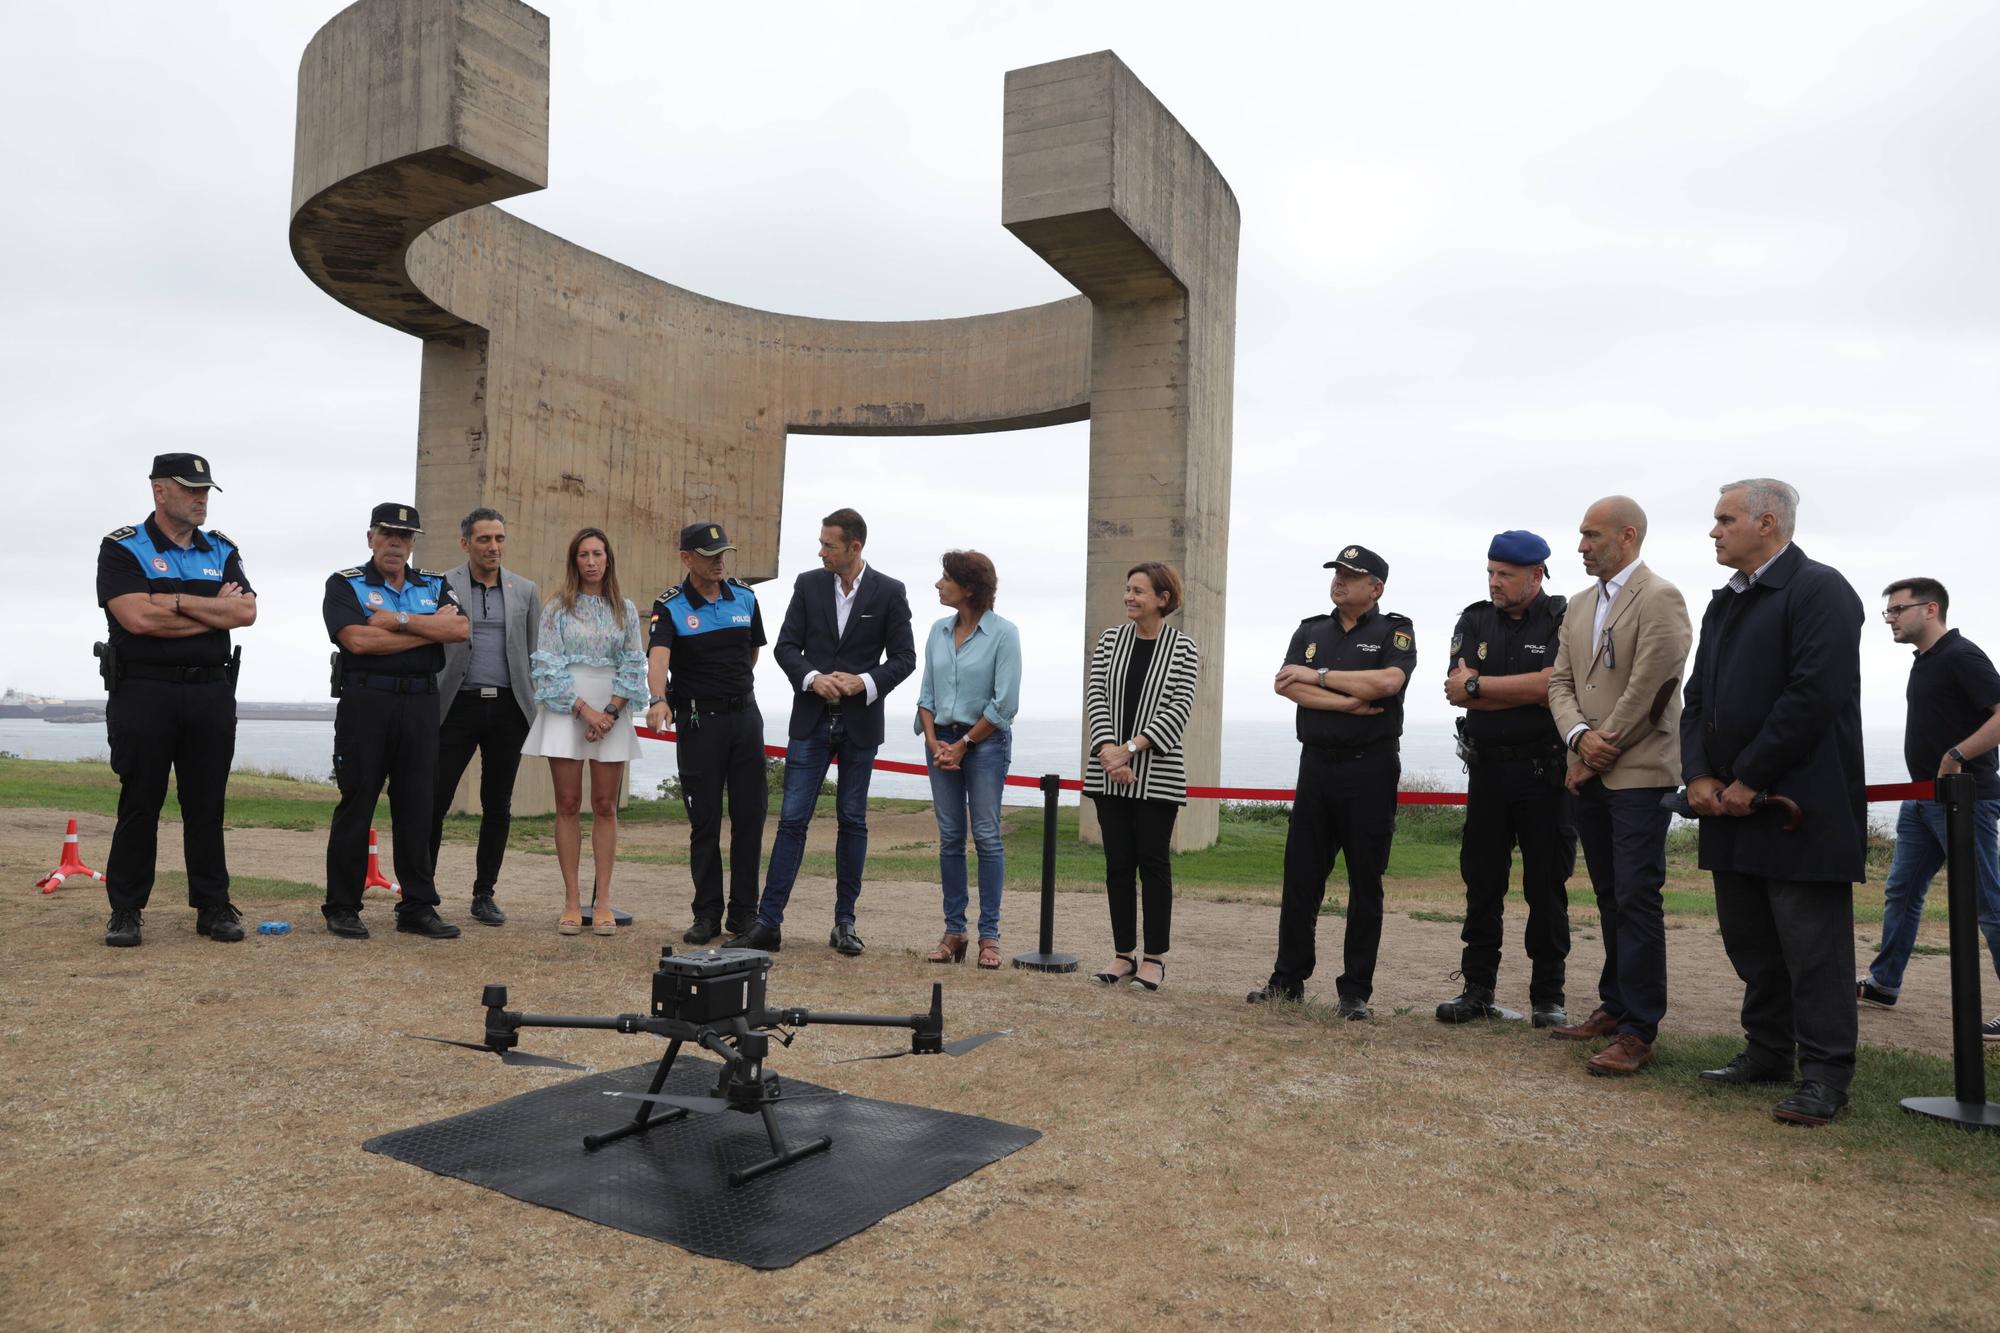 El nuevo furgón para pilotar drones de la Policía Local de Gijón, en imágenes